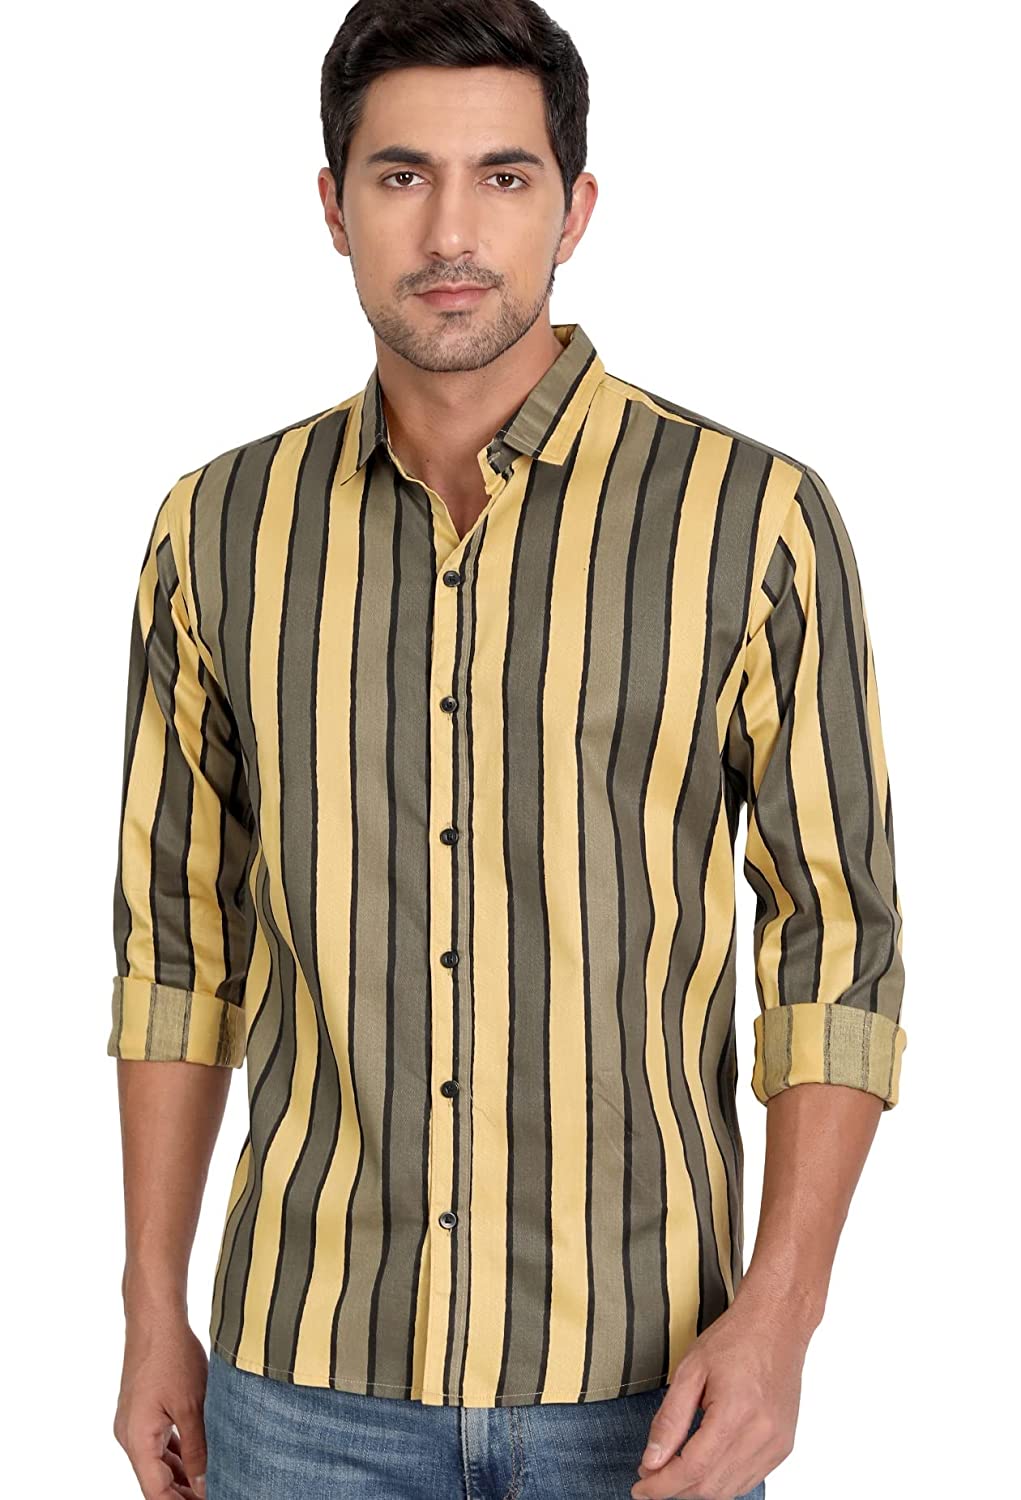 Men’s Regular Fit Cotton Casual Stripe Shirt for Men Full Sleeves